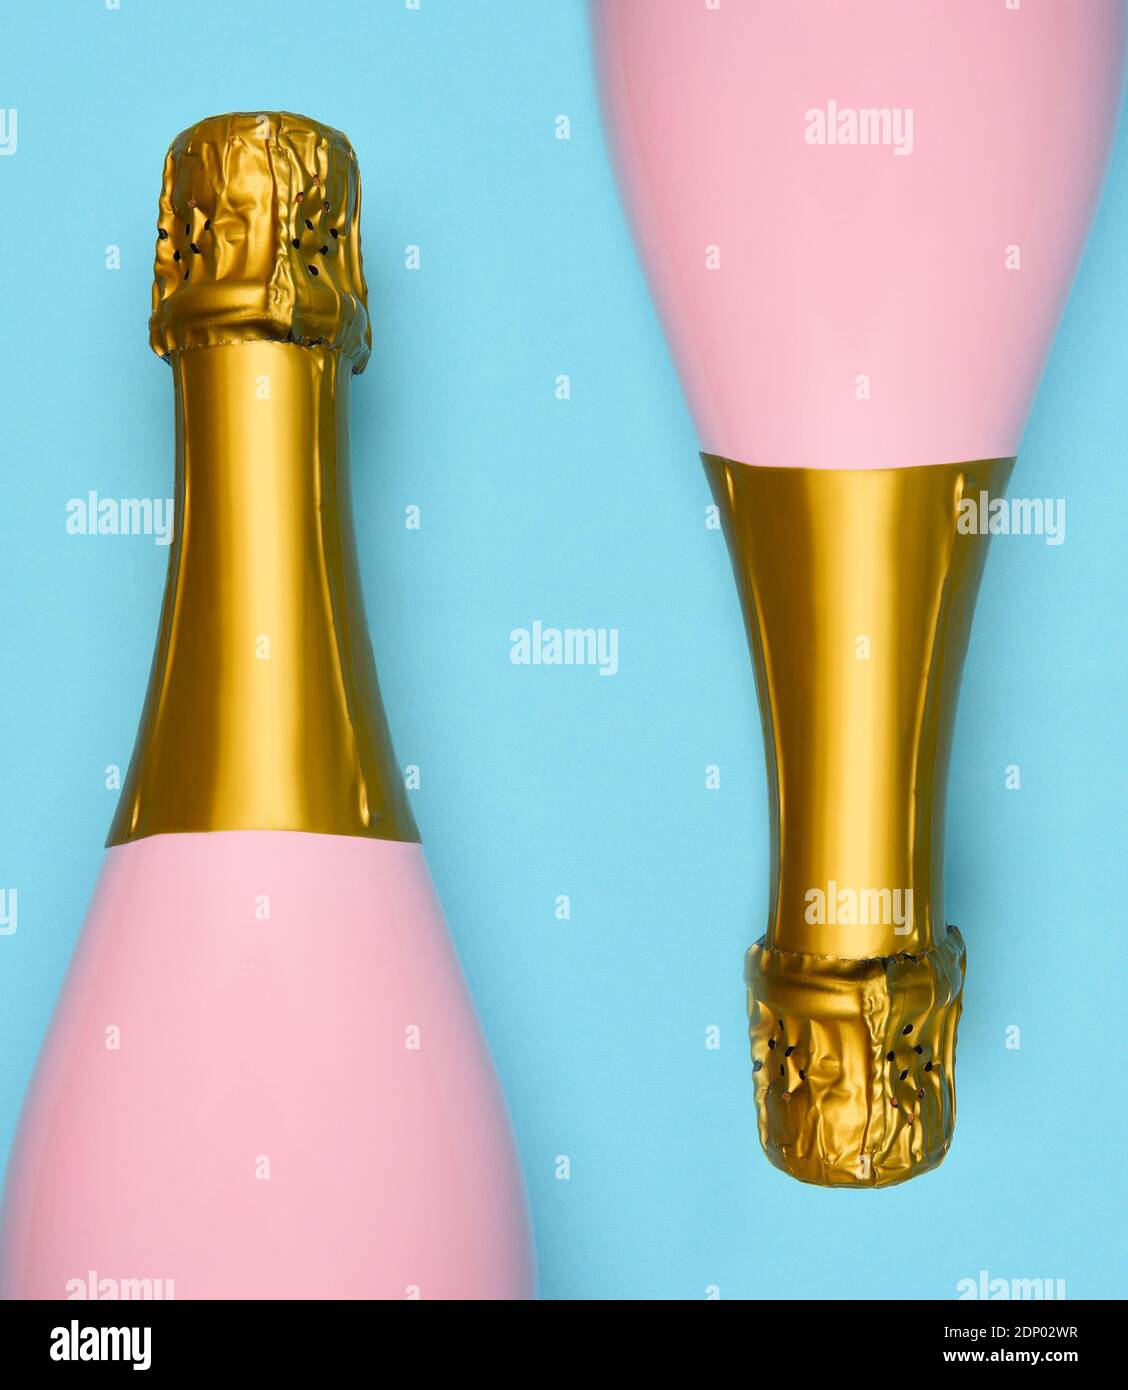 Zwei Pink Champagne Flaschen auf blauem blauem blauem Hintergrund. Horizontale Aufnahme mit großem Winkel. Stockfoto